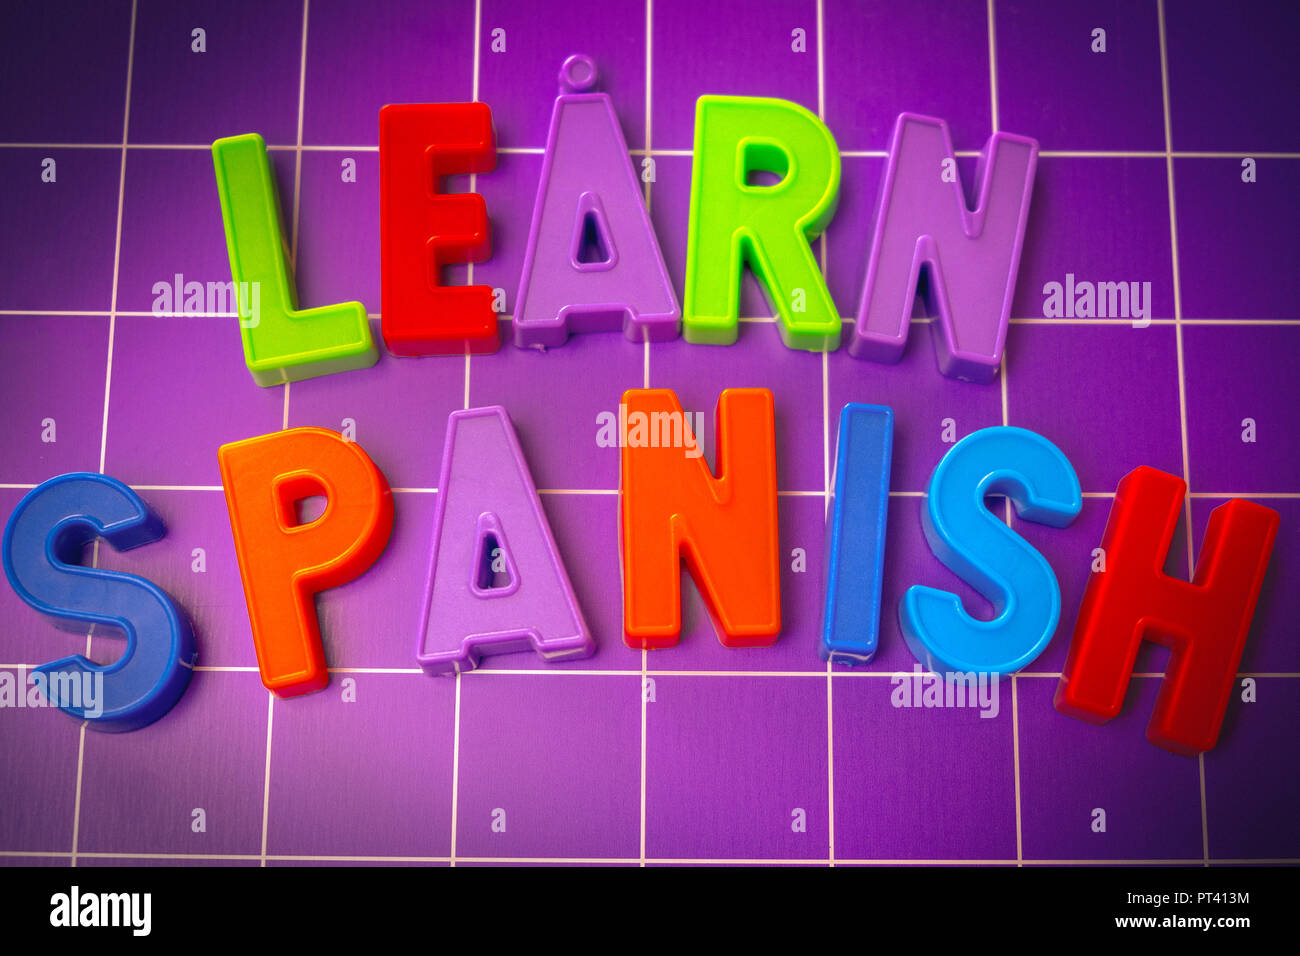 Spanische Sprache Alphabet am Magneten Buchstaben lernen Stockfoto